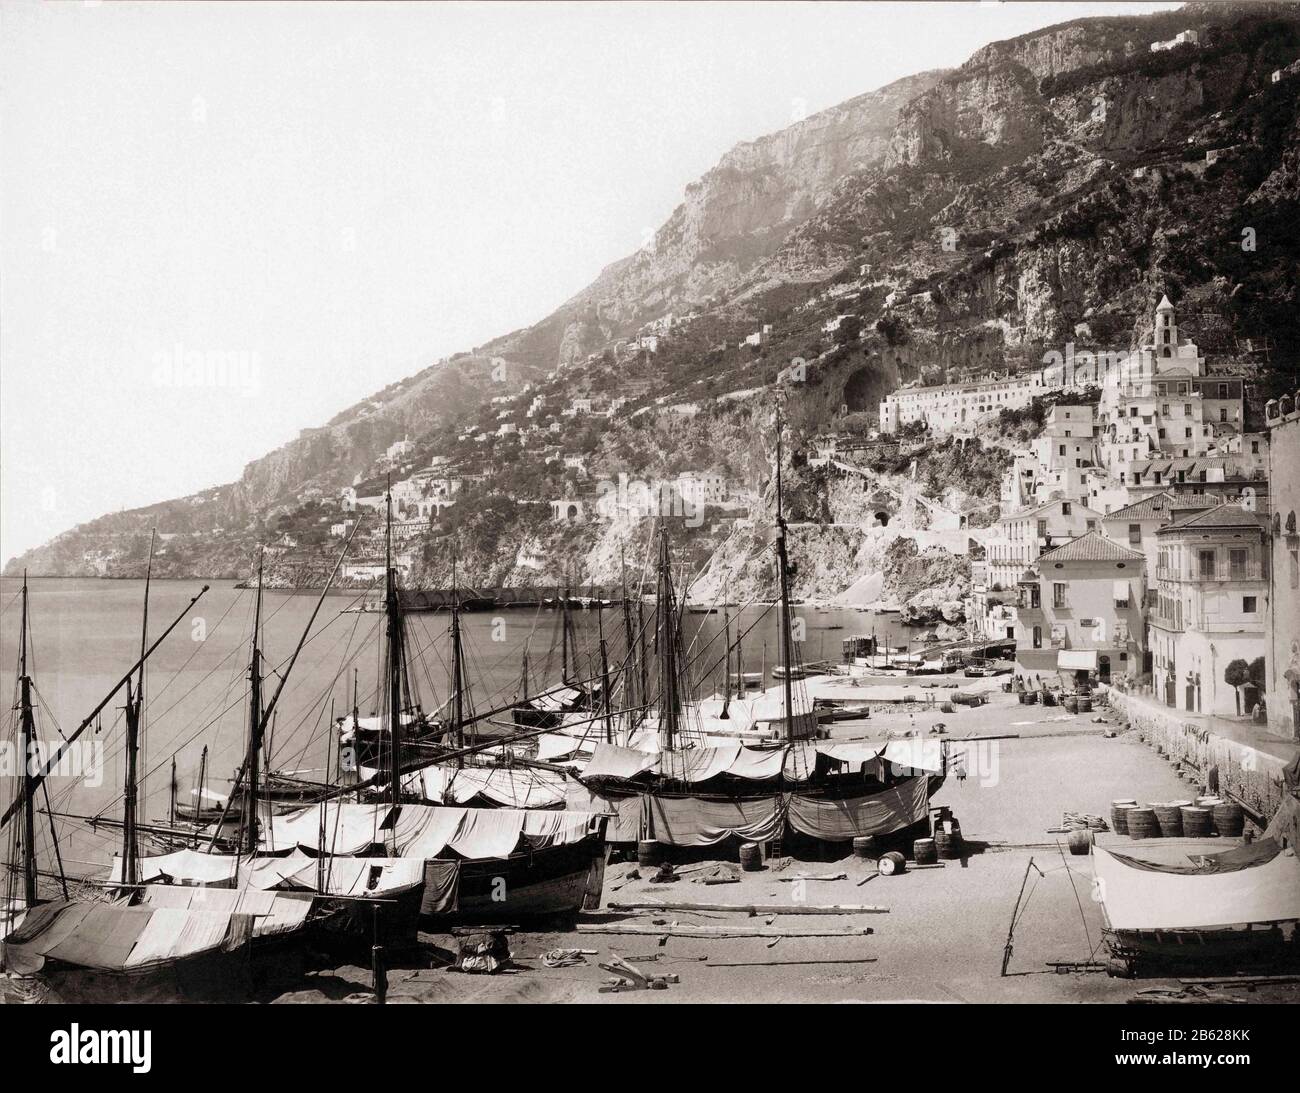 Port d'Amalfi à la fin du XIXe siècle. Après un travail du photographe allemand Giorgio Sommer, 1834-1914 Banque D'Images